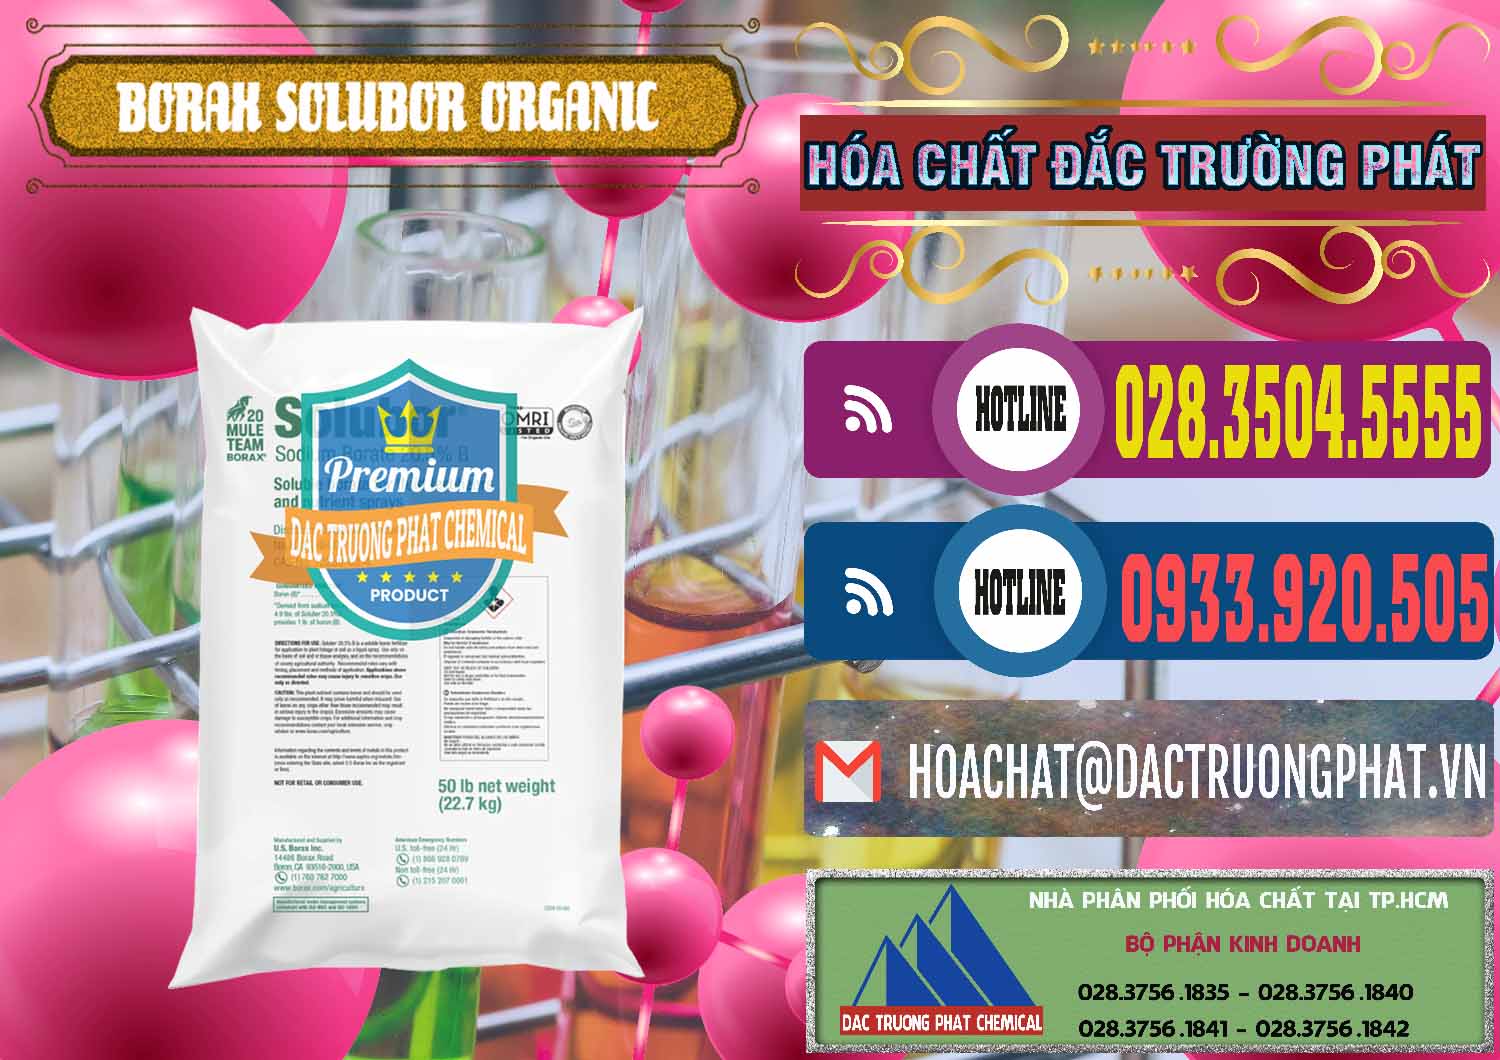 Nơi bán & phân phối Borax Hữu Cơ Solubor Organic Mỹ Usa - Mule 20 Team - 0458 - Đơn vị cung ứng & phân phối hóa chất tại TP.HCM - muabanhoachat.com.vn